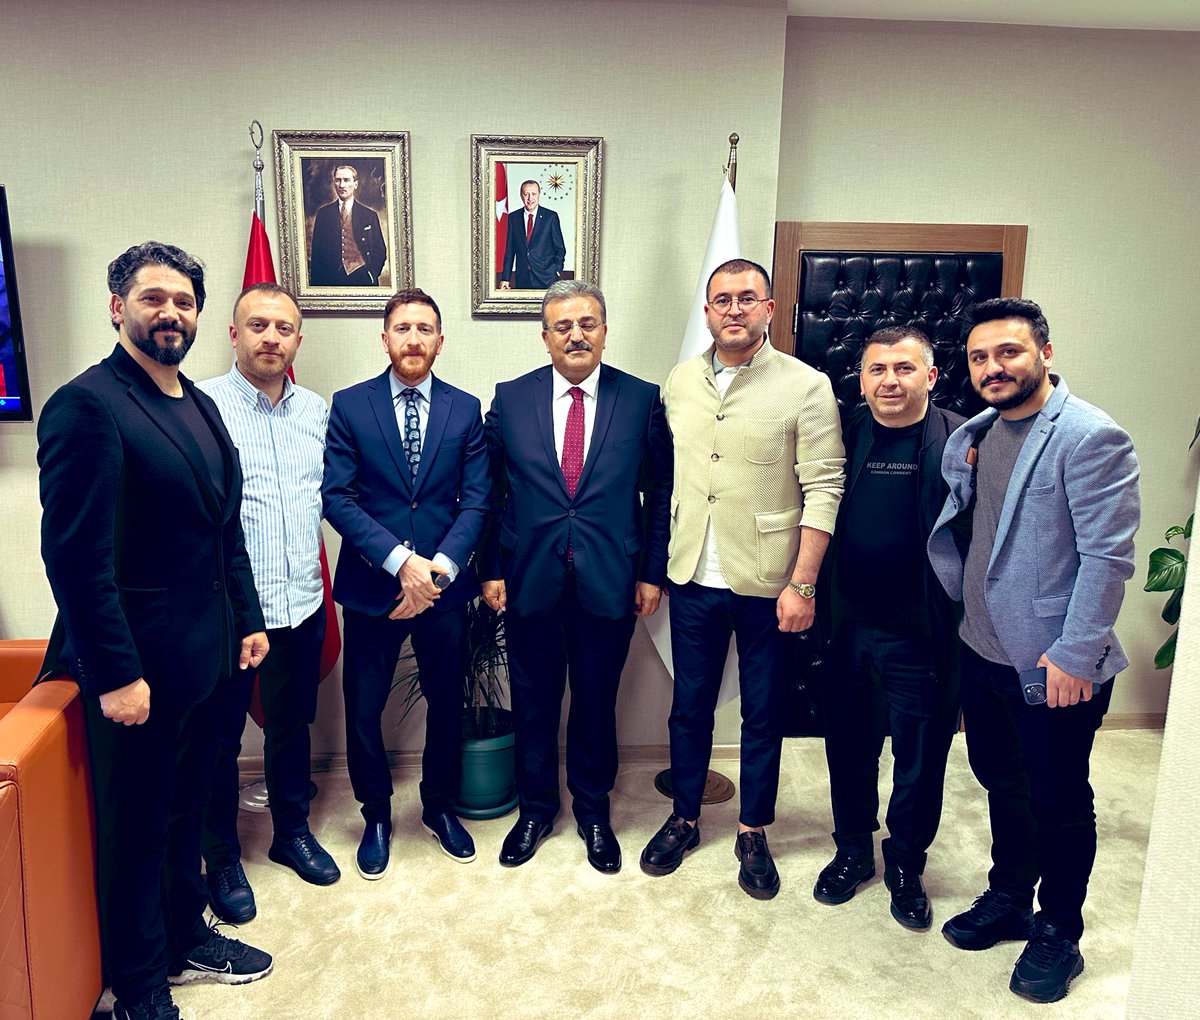 Erzurumspor Başkanı Sayın Ahmet Dal ile Yöneticileri değerli dostlarımıza nazik ziyaretleri için çok teşekkür ediyorum.

Bizim için büyük bir kıymet ifade eden doğunun başkenti,Dadaşların, Nene Hatun torunlarının ve samimiyetin şehri Erzuruma ve bu güzel şehrin nadide kulübü